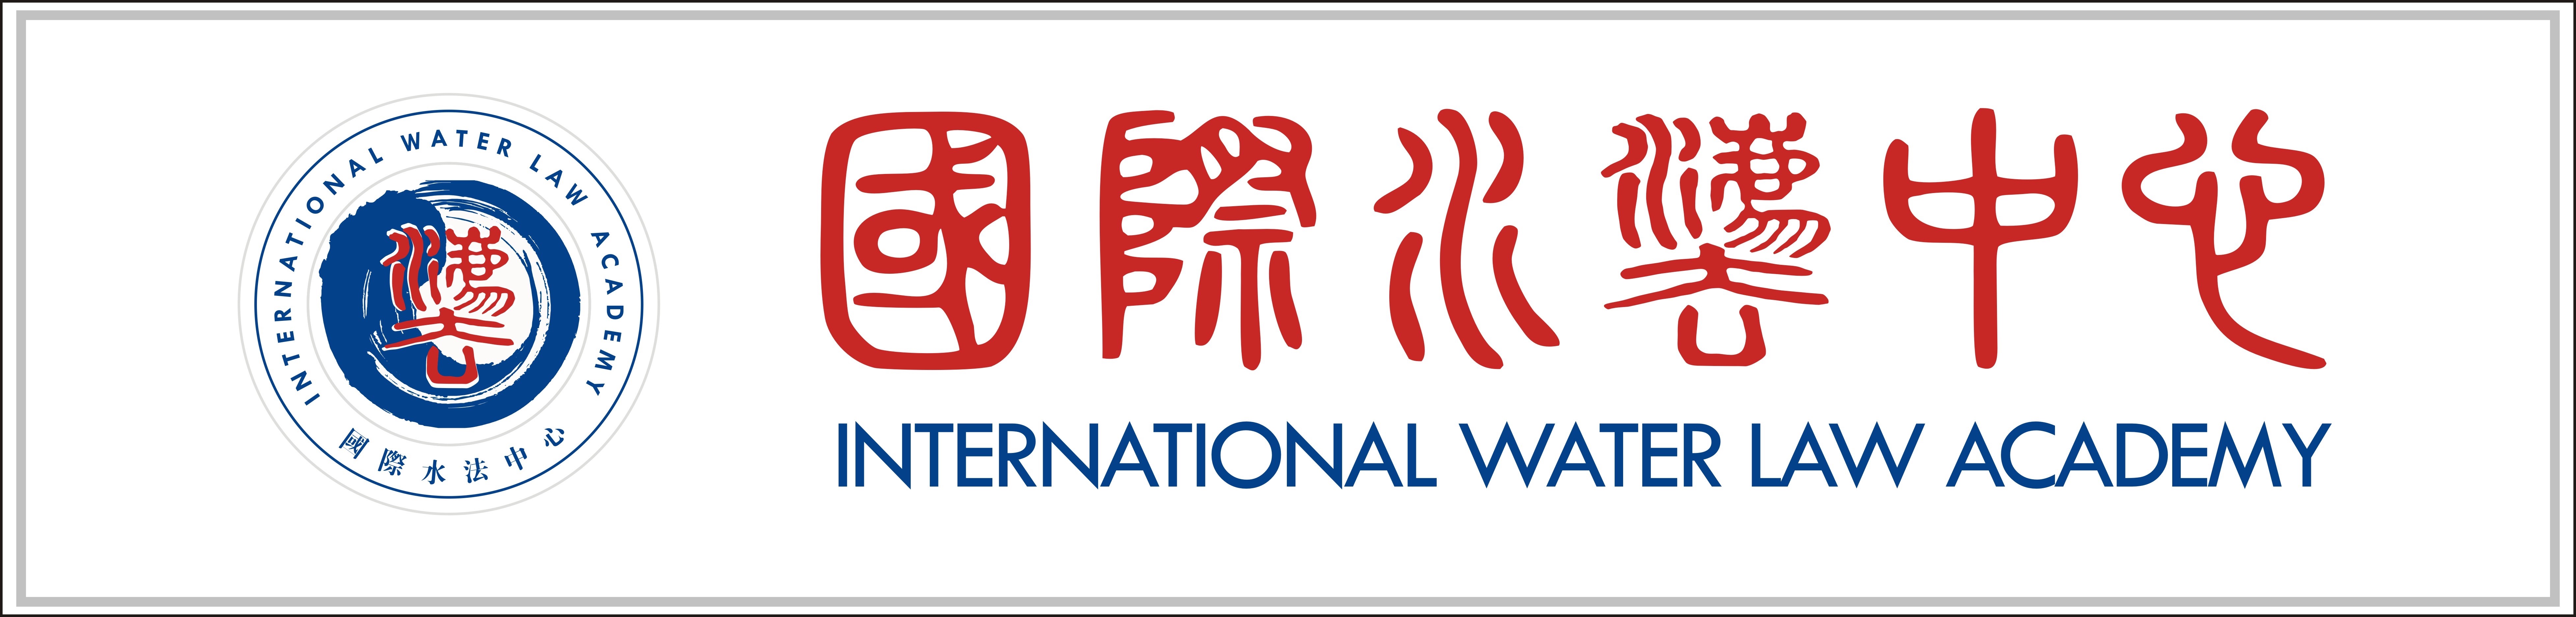 IWLA logo